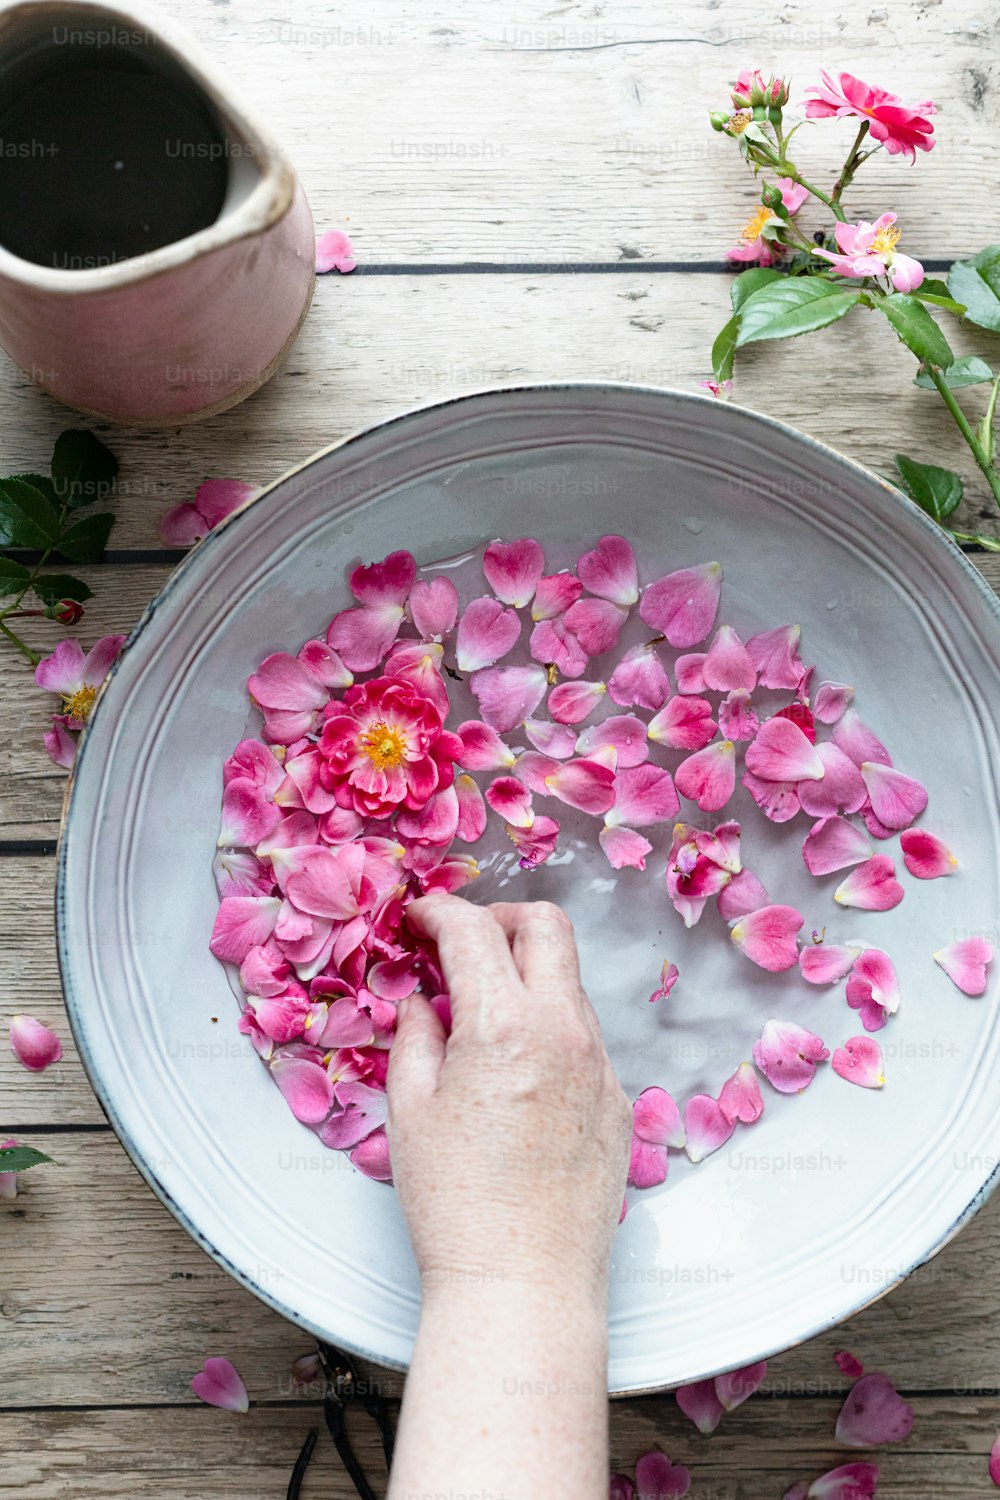 un bol d’eau avec des fleurs roses flottant dedans